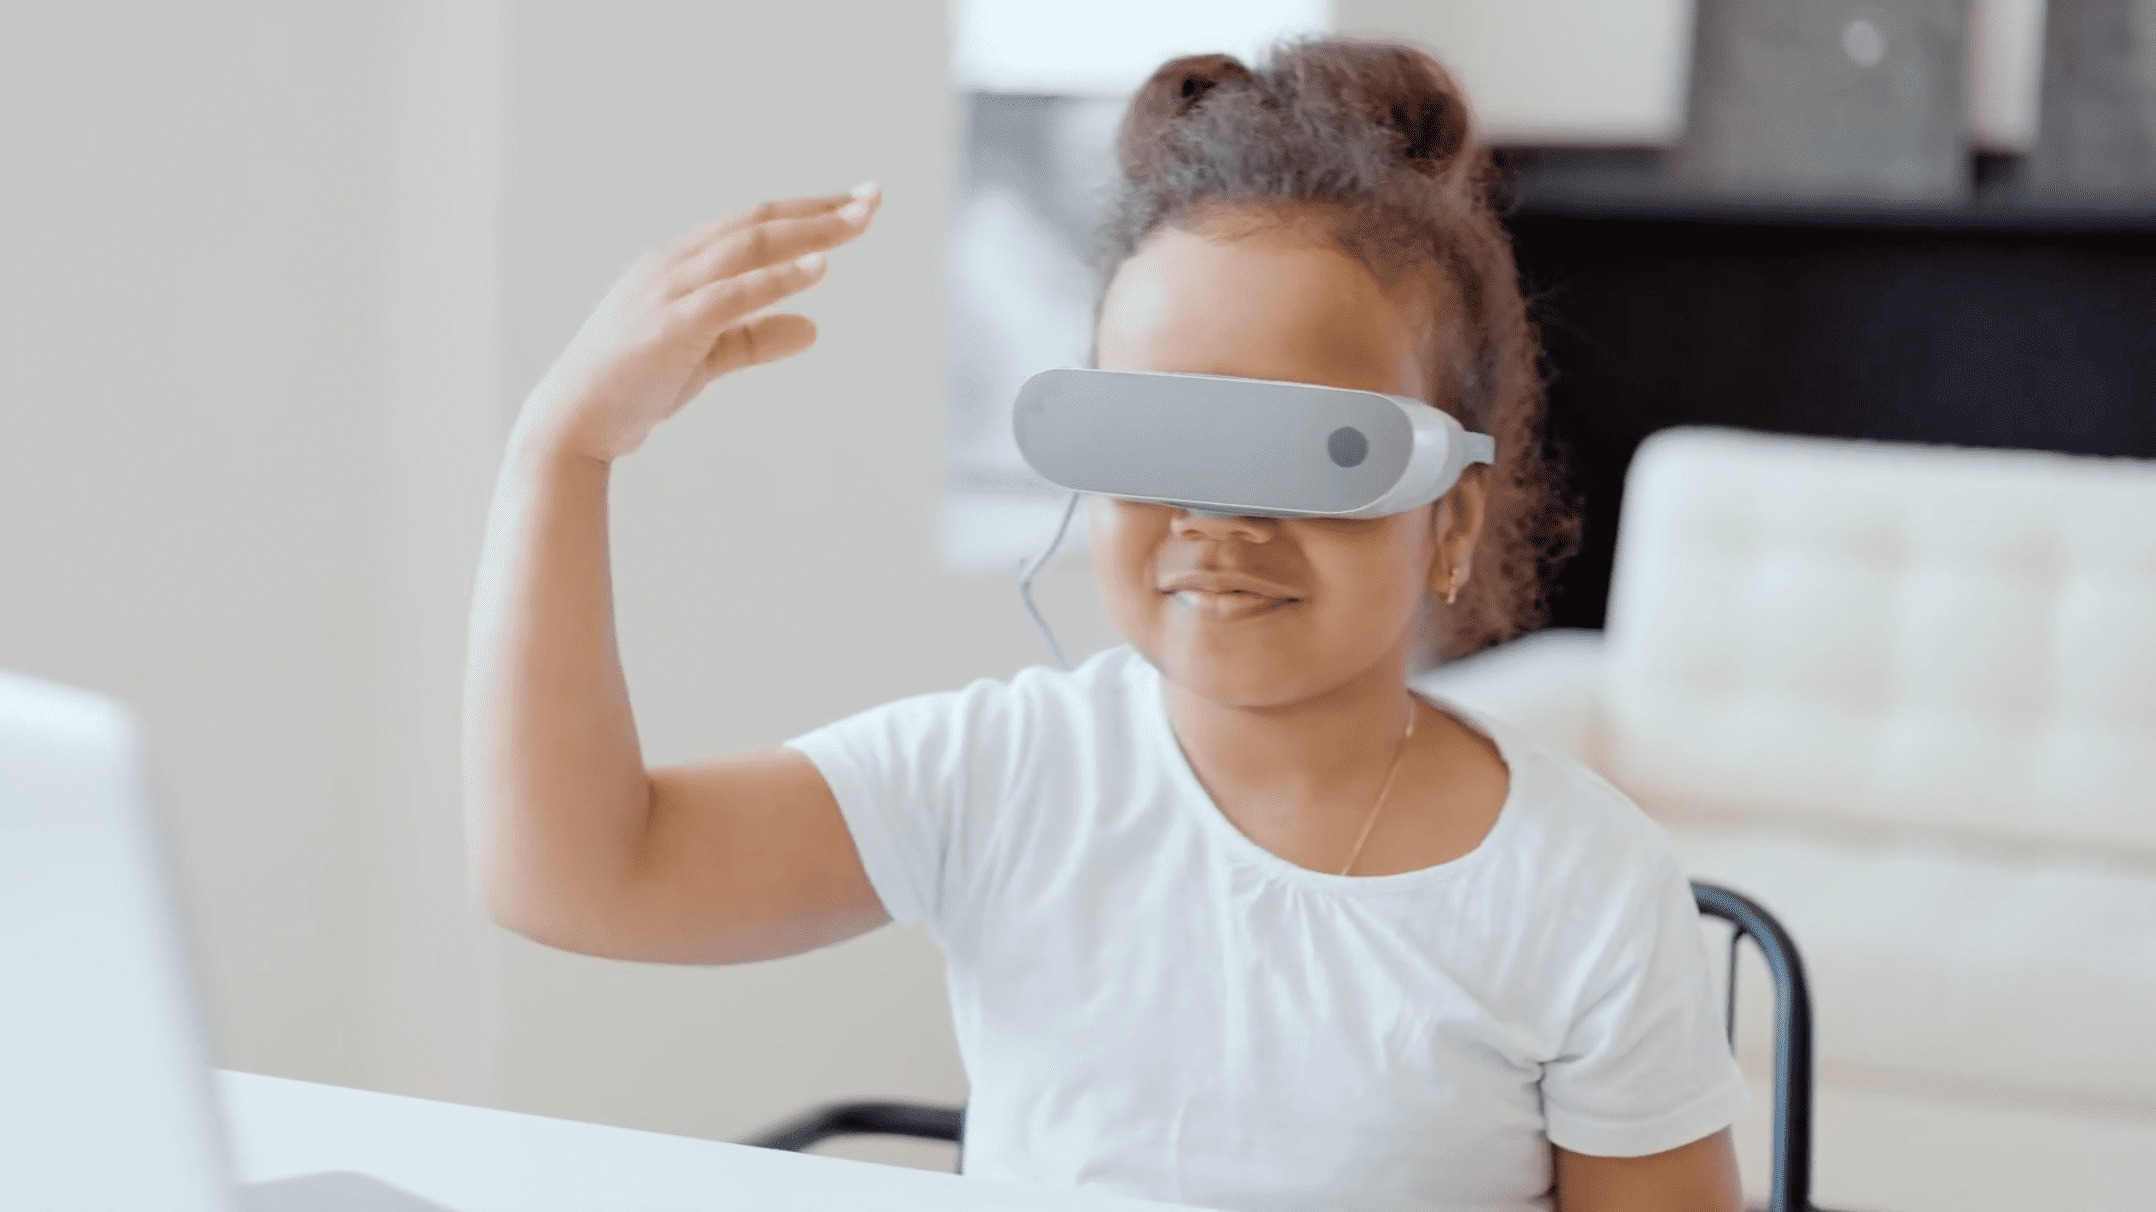 未來電影可用VR做呈現。